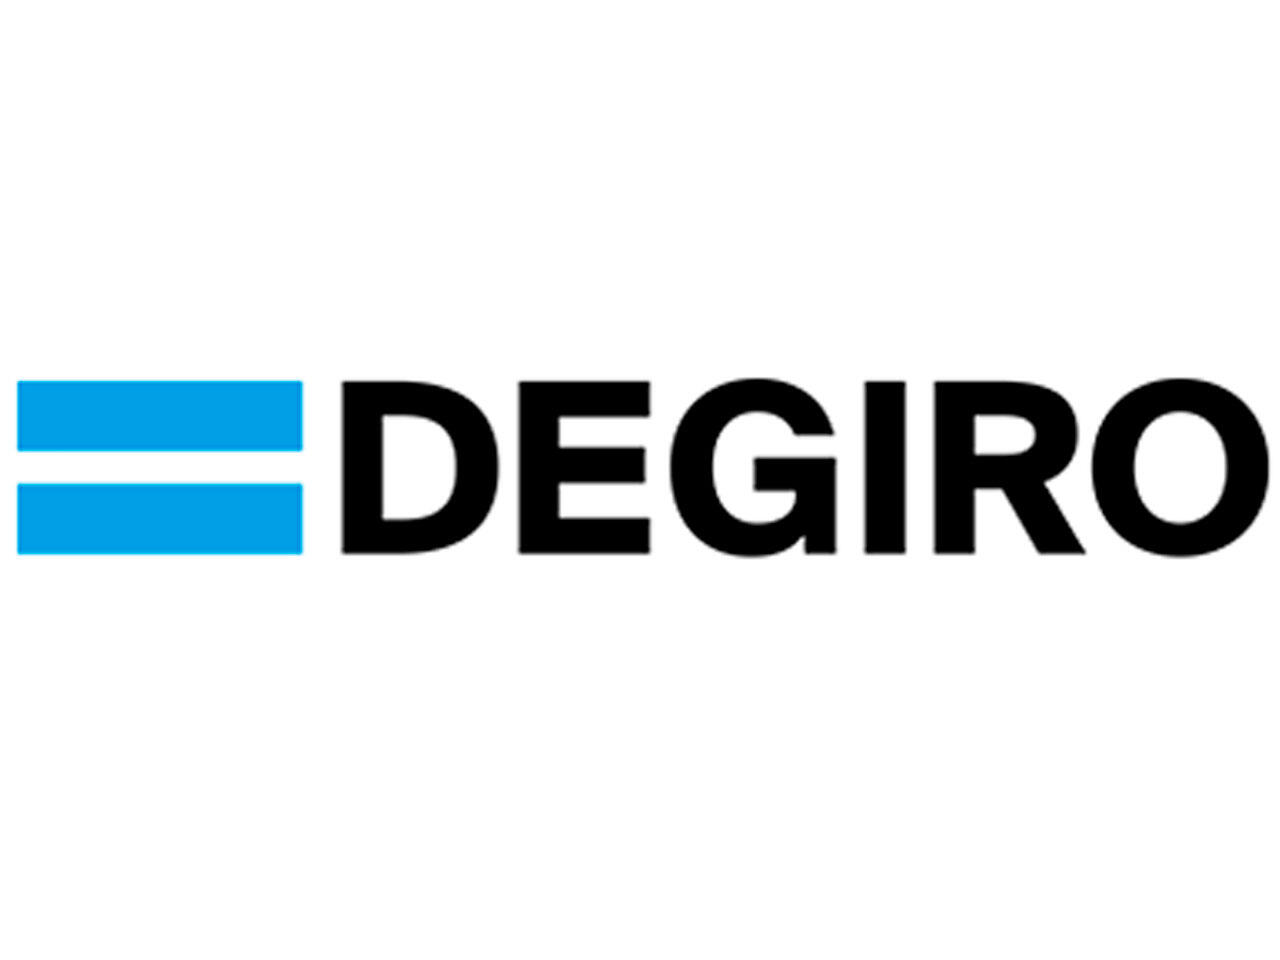 Handelsplatform Degiro